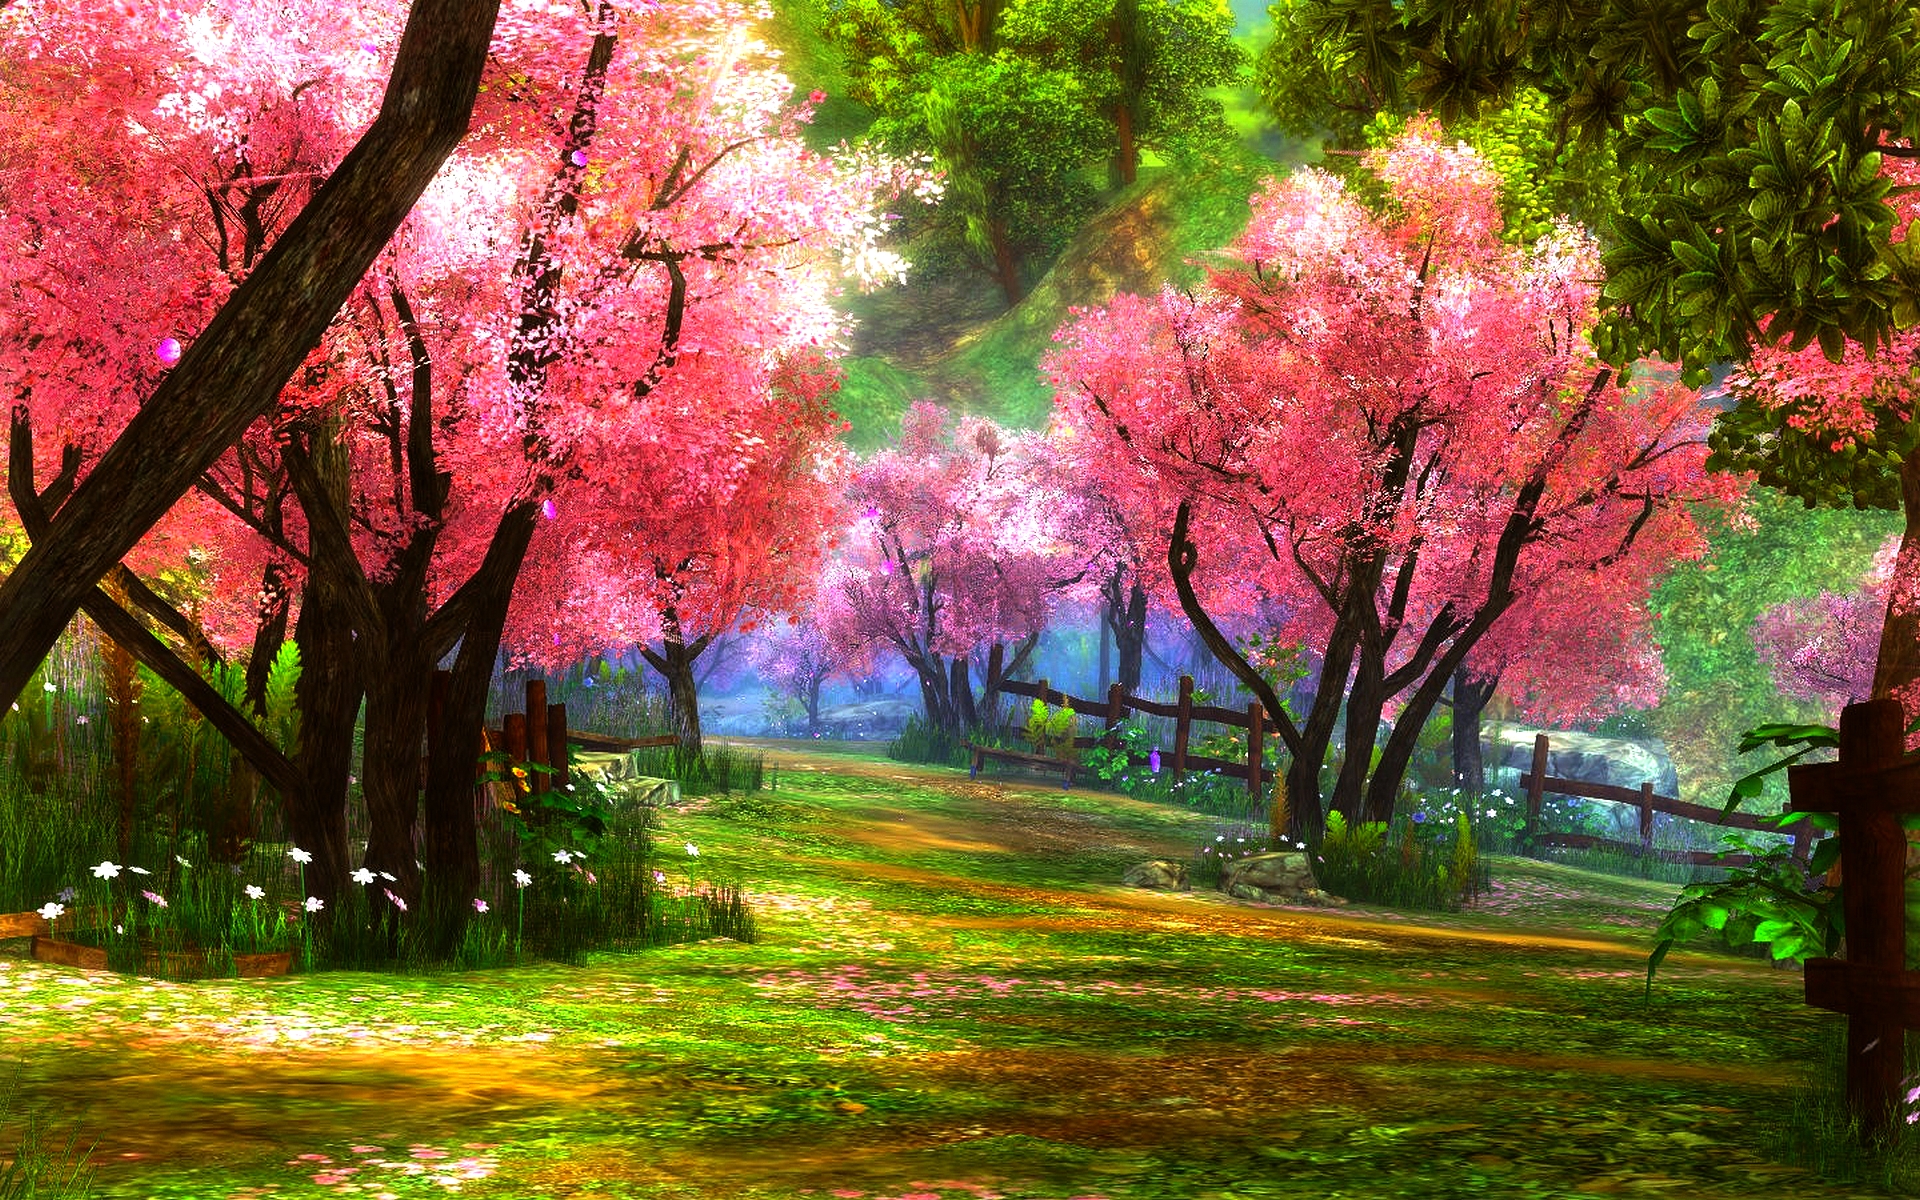 Công viên màu xanh được trang trí bởi hàng ngàn cây màu hồng tuyệt đẹp. Vô vàn khoảnh khắc lãng mạn chờ đón bạn trong công viên vào mùa xuân này.